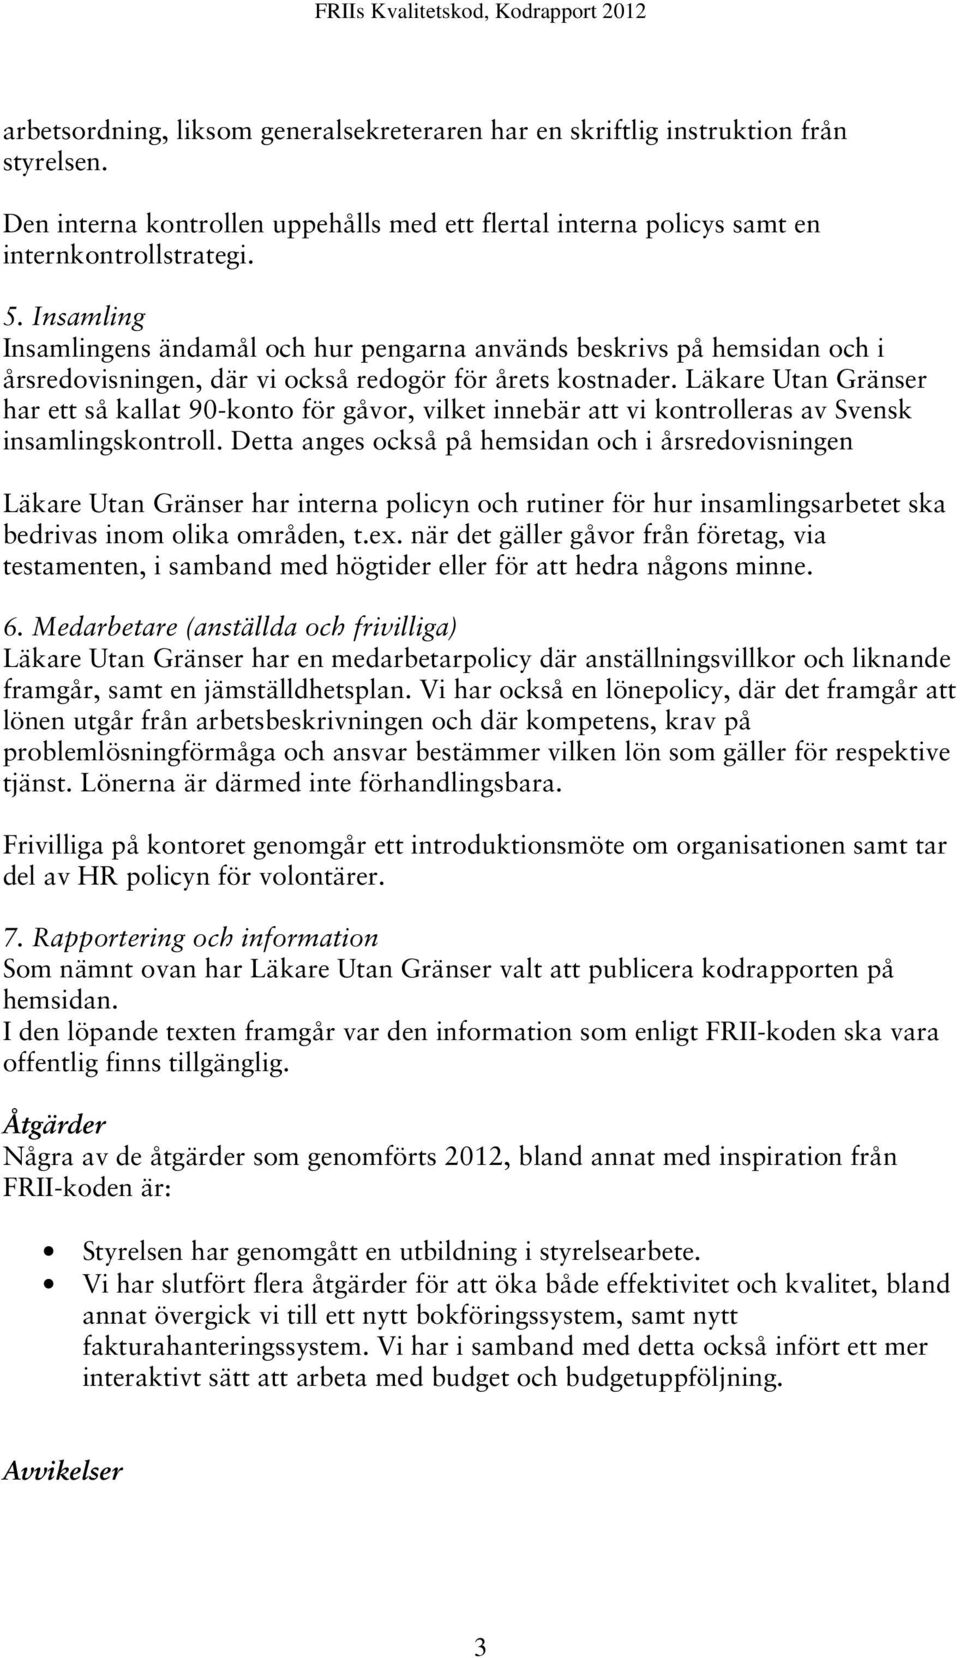 Läkare Utan Gränser har ett så kallat 90-konto för gåvor, vilket innebär att vi kontrolleras av Svensk insamlingskontroll.